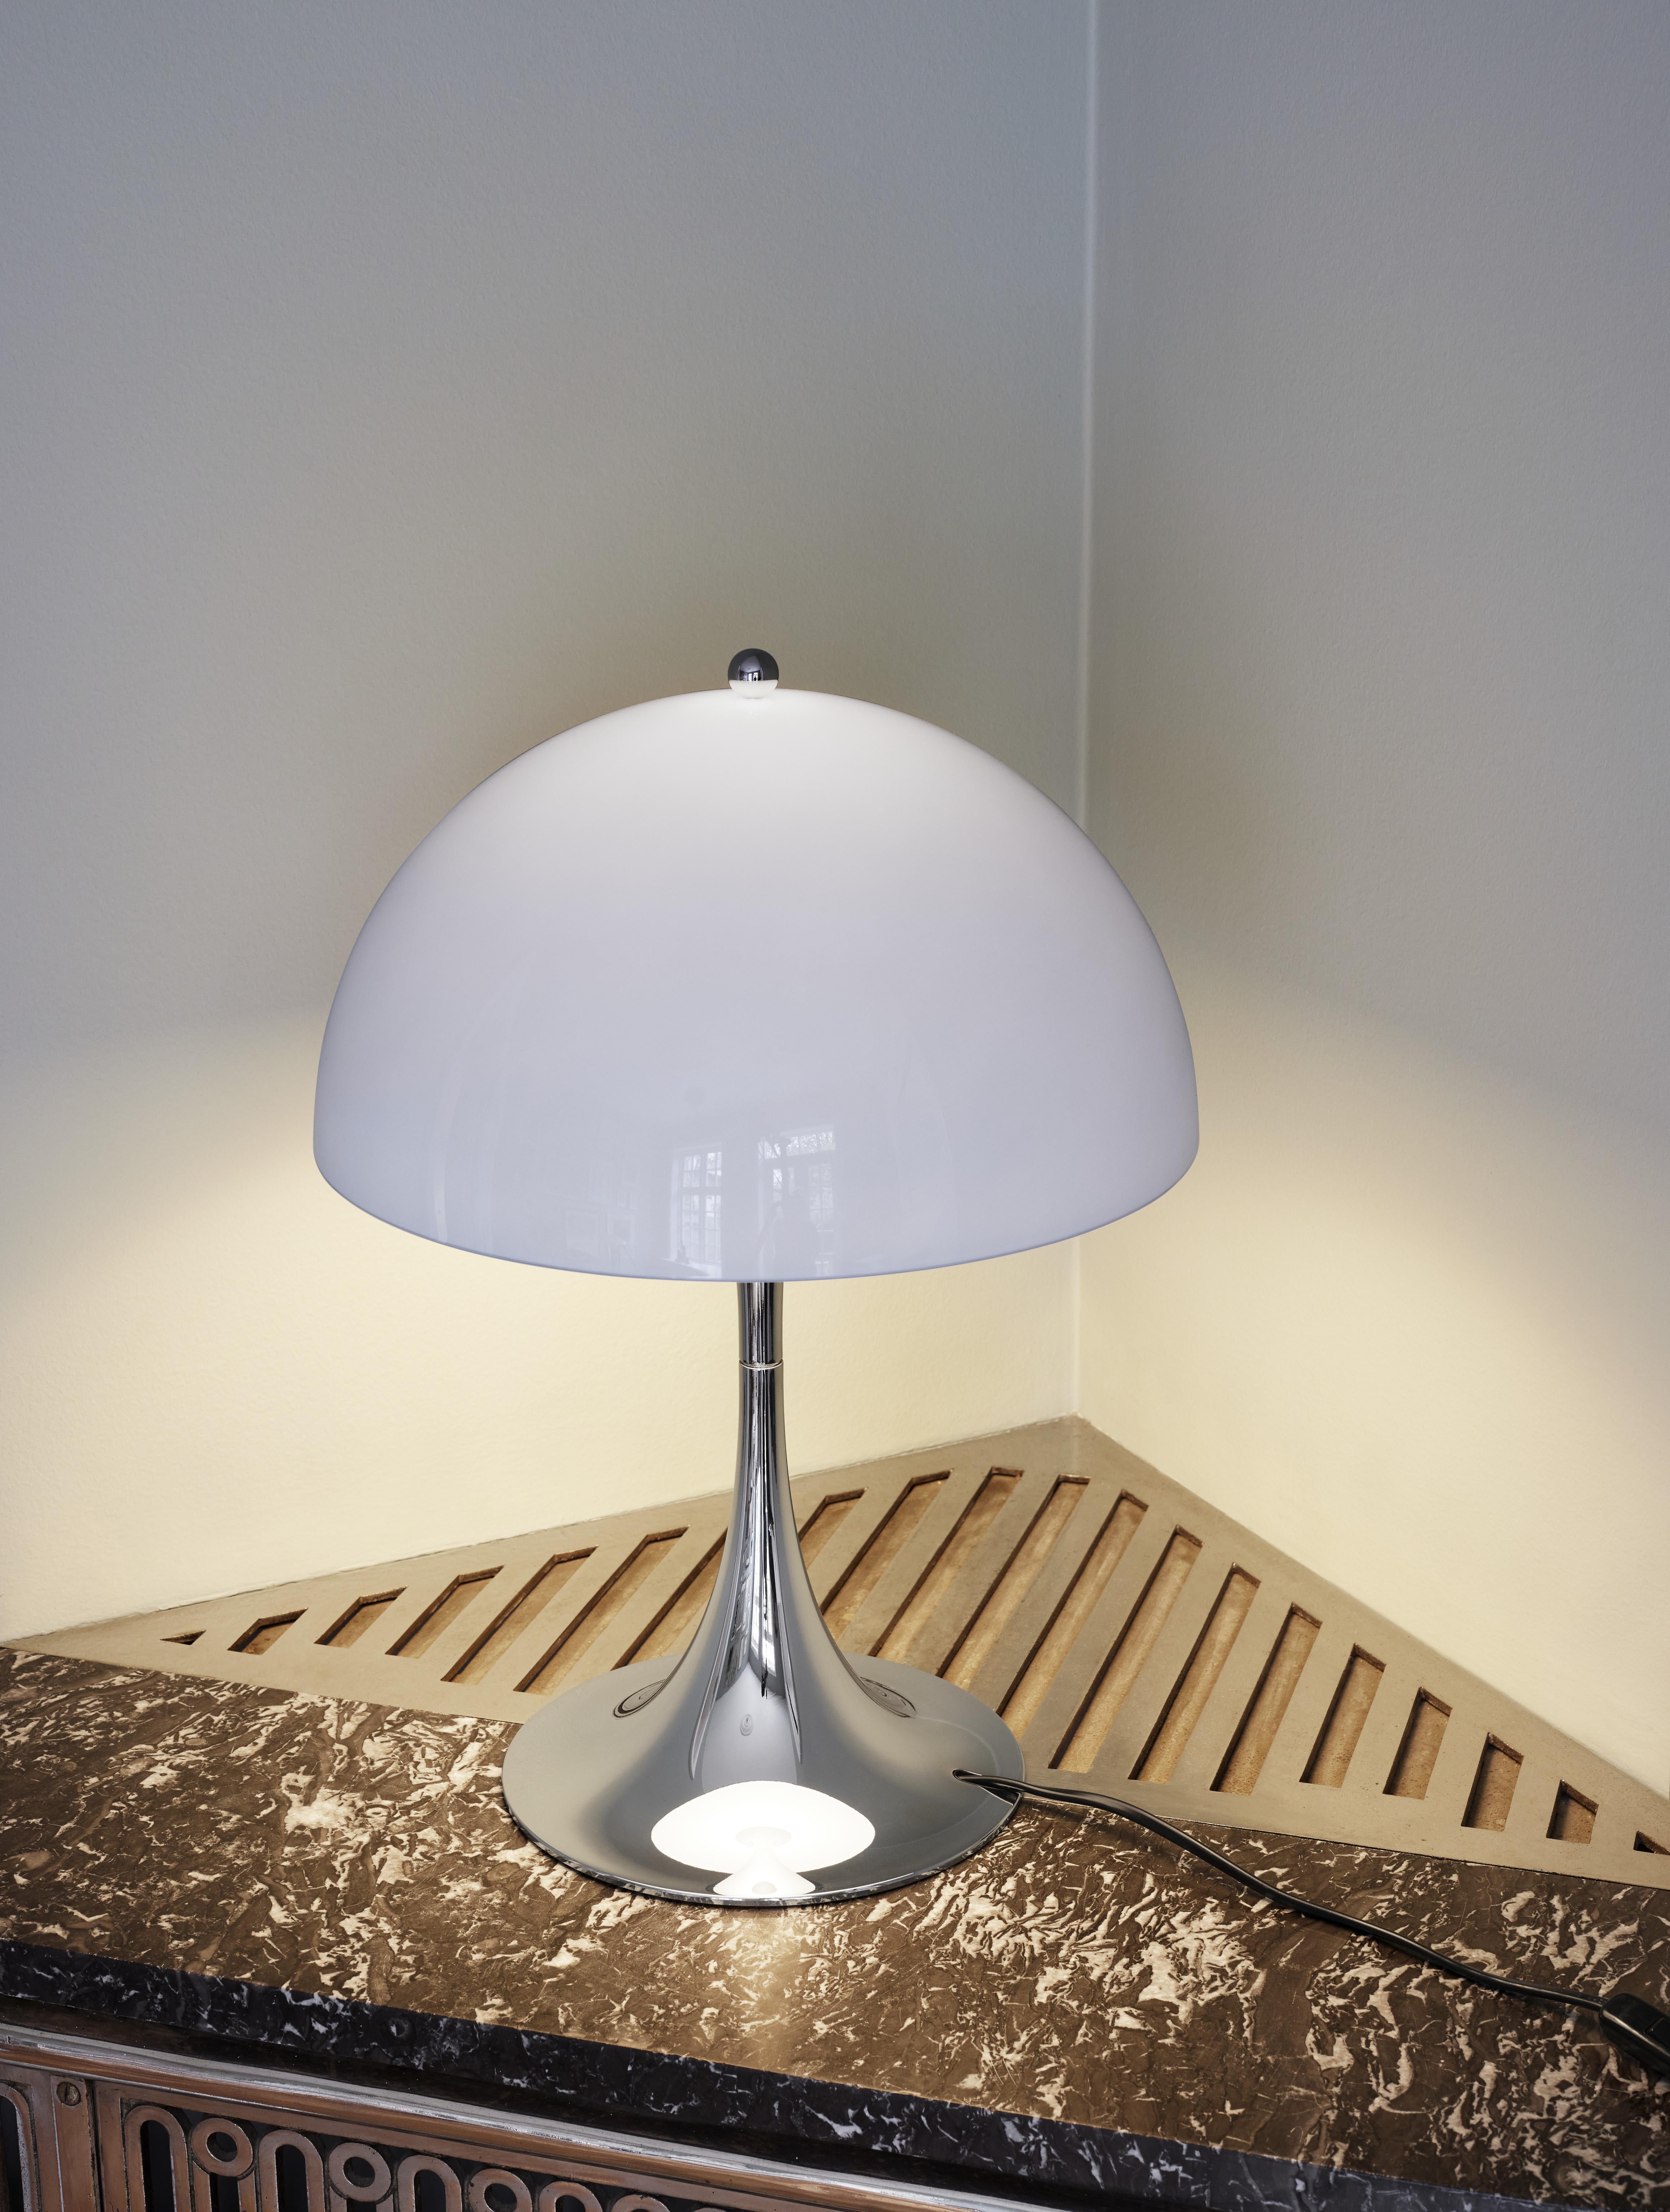 Lampe de table 'Panthella 320' de Verner Panton pour Louis Poulsen en gris.

Réalisée en acrylique opale gris clair et en chrome, cette lampe de table unique éclaire tout espace de façon harmonieuse et sans éblouissement. La réflexion de sa source